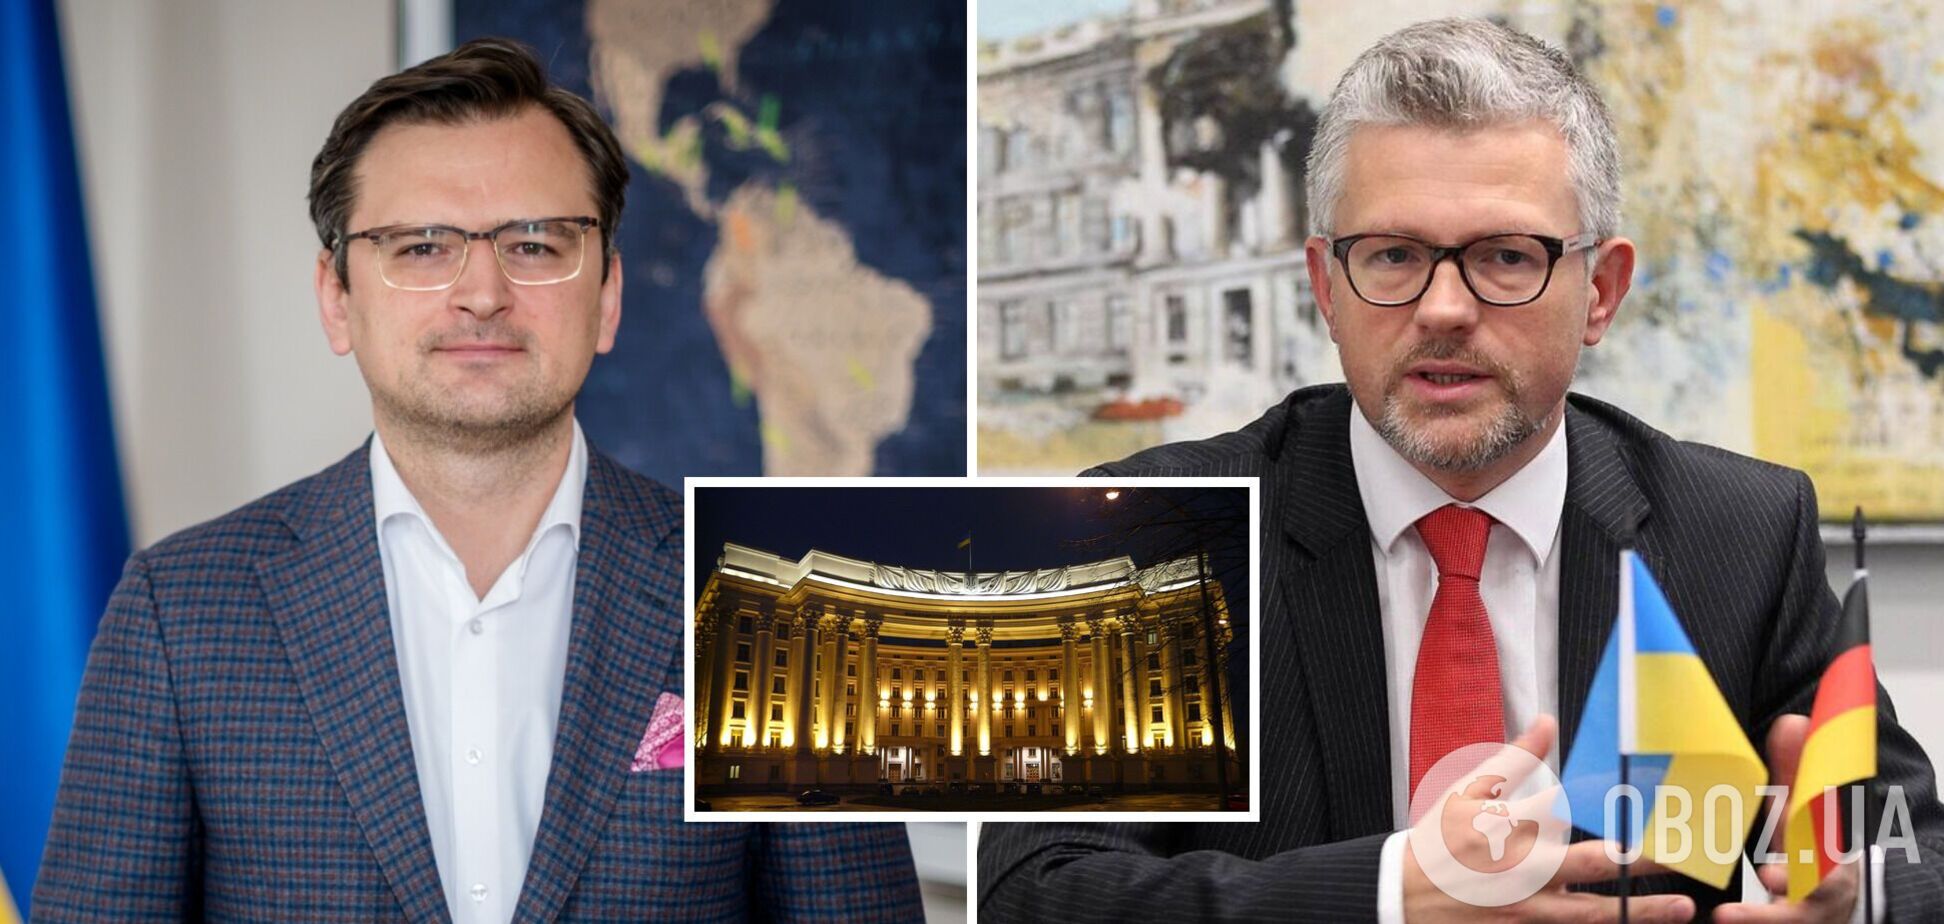 Экс-посол Украины в Германии Мельник получил должность замглавы МИД